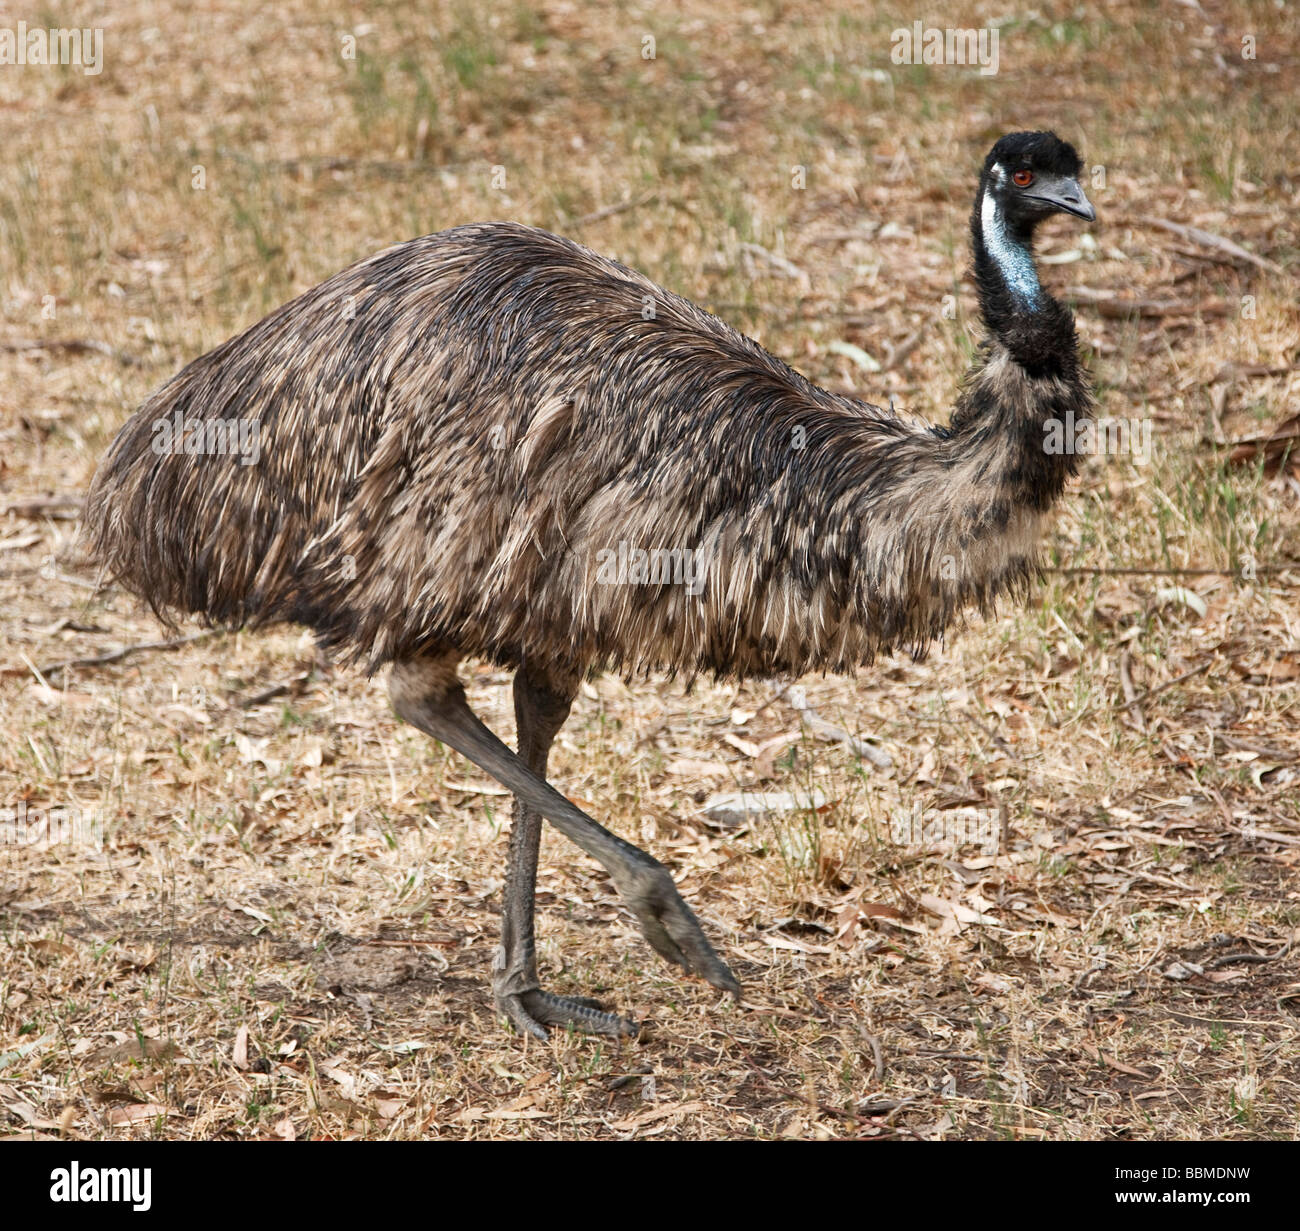 Australien, Victoria. Eine flugunfähige emu, Australien s größte Vogel. Stockfoto